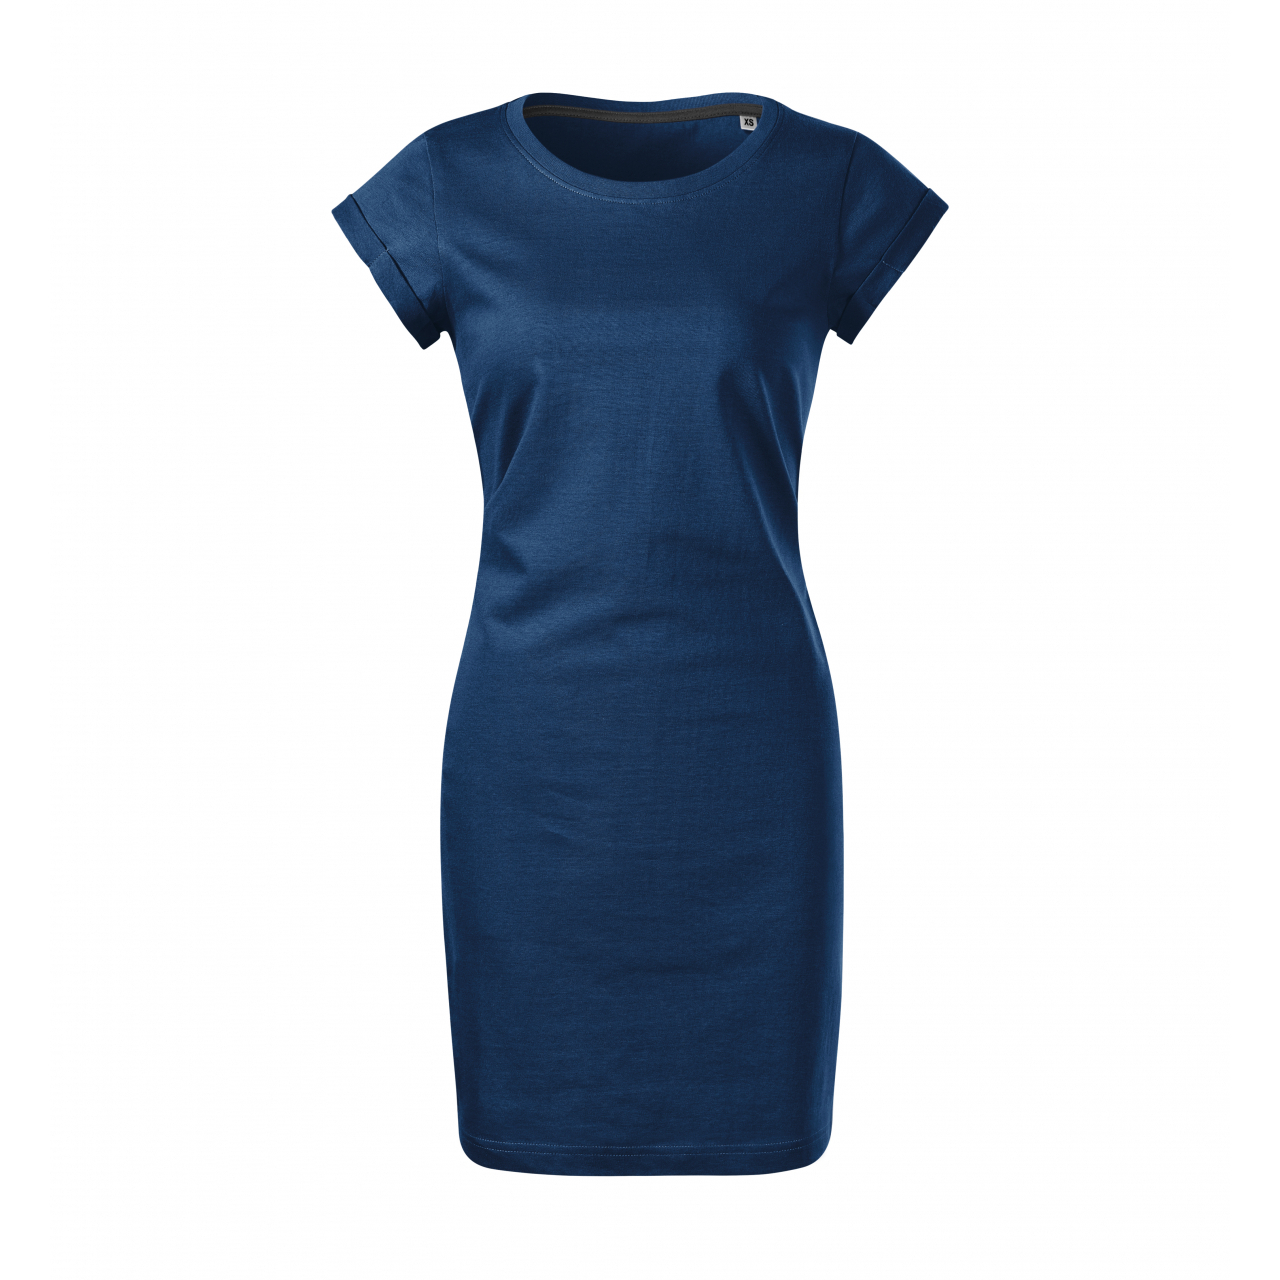 Šaty dámské Malfini Freedom - tmavě modré, XS